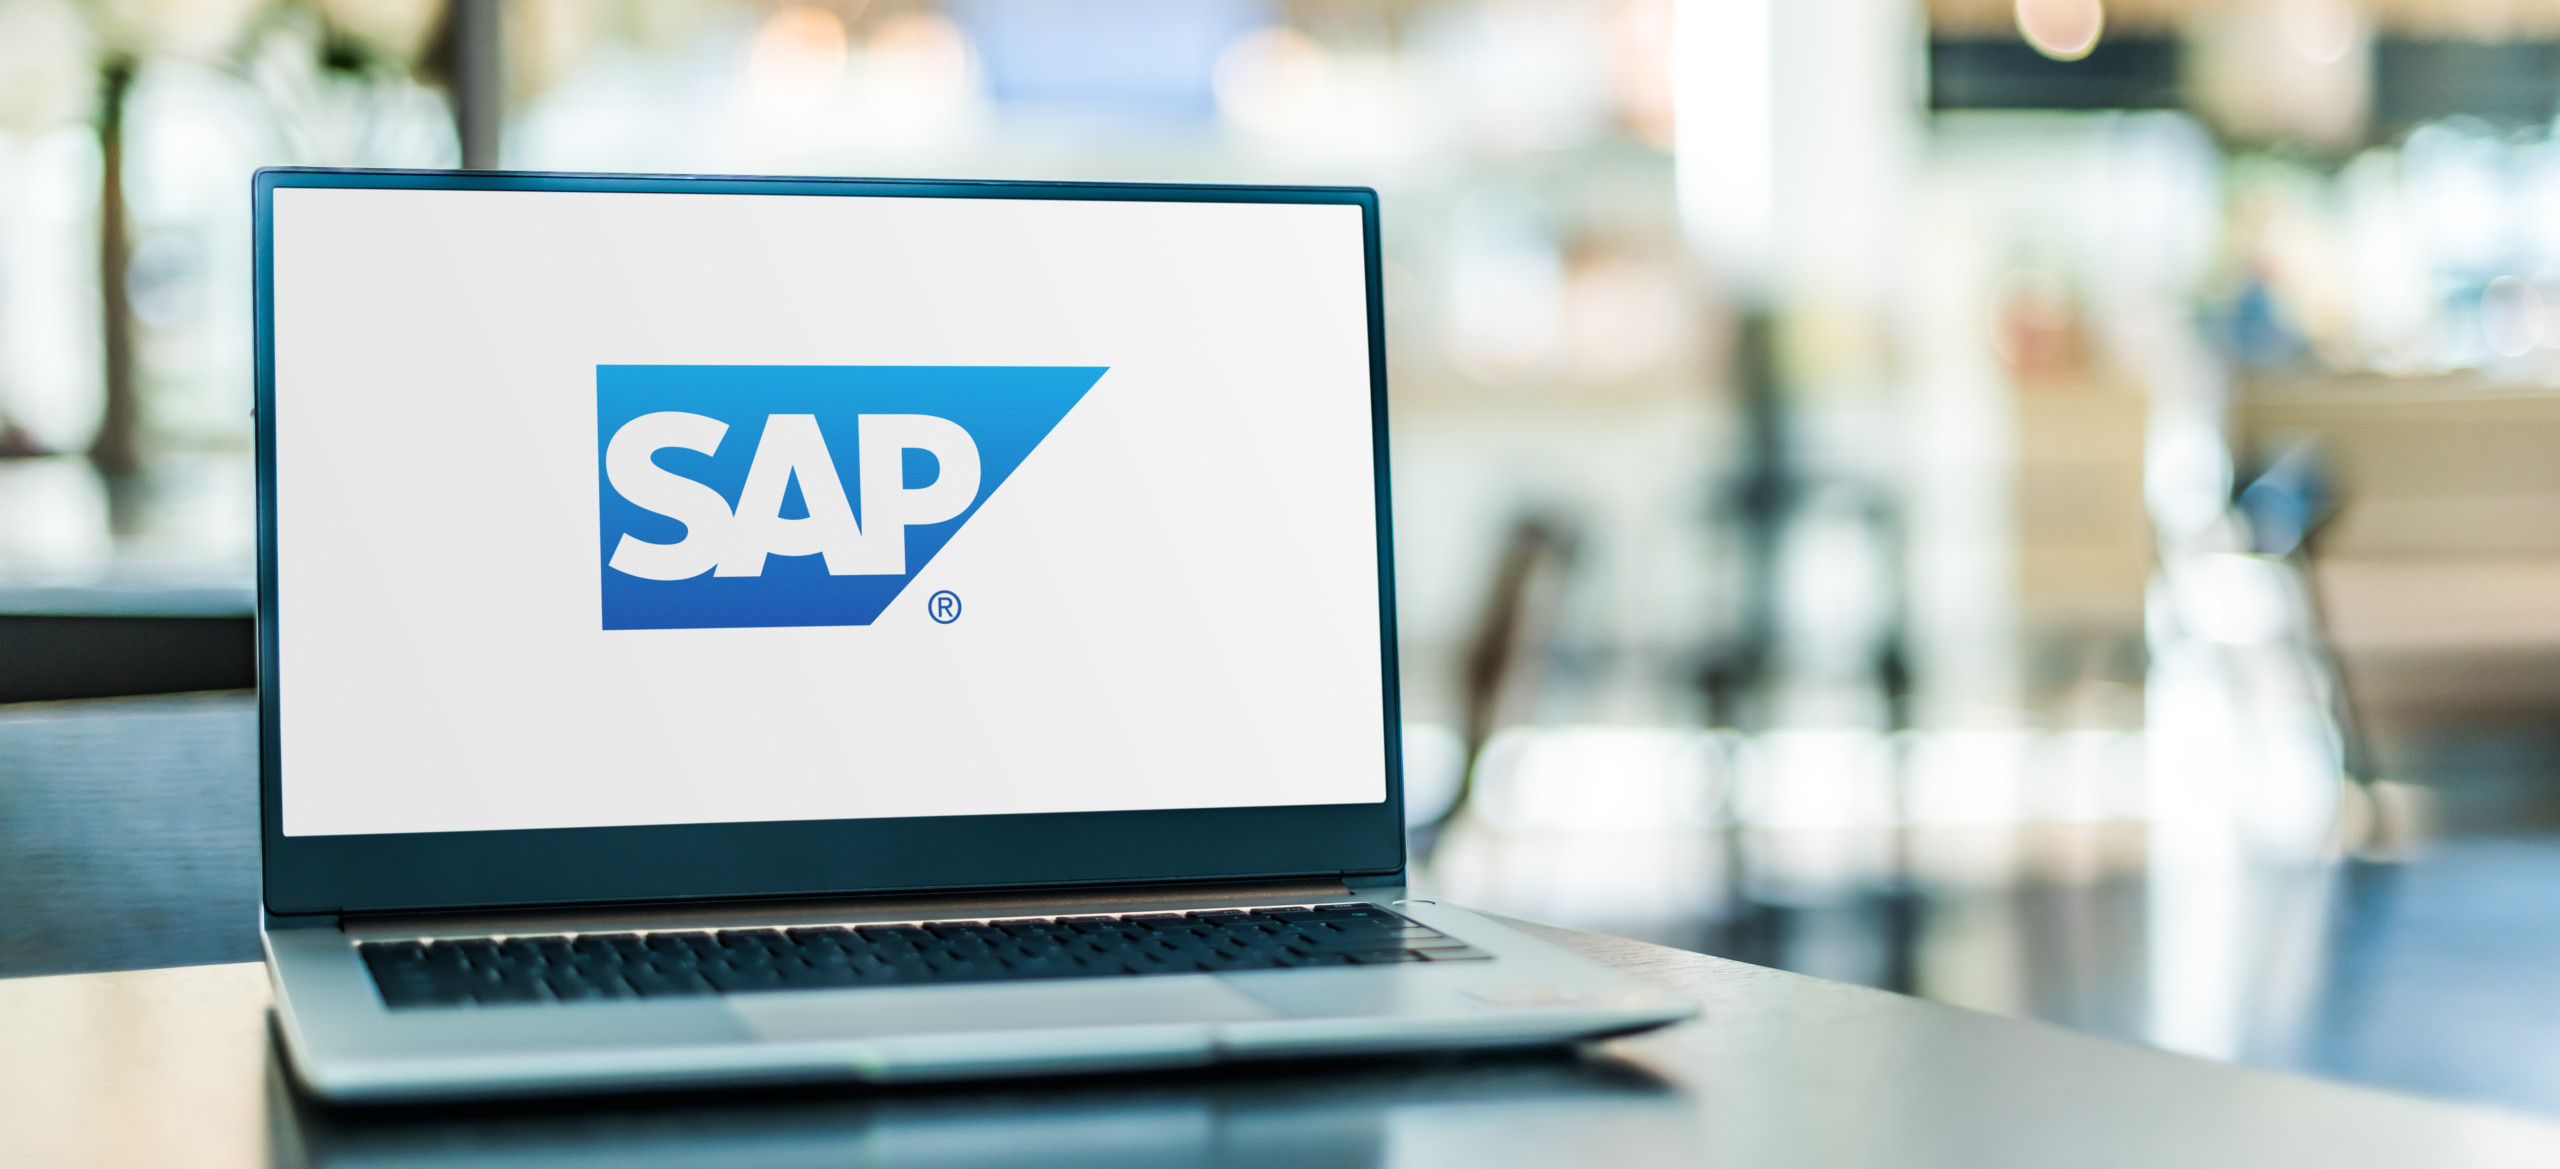 SAP verzeichnet hohes Wachstum im Cloudgeschäft – operatives Gewinnwachstum erreicht